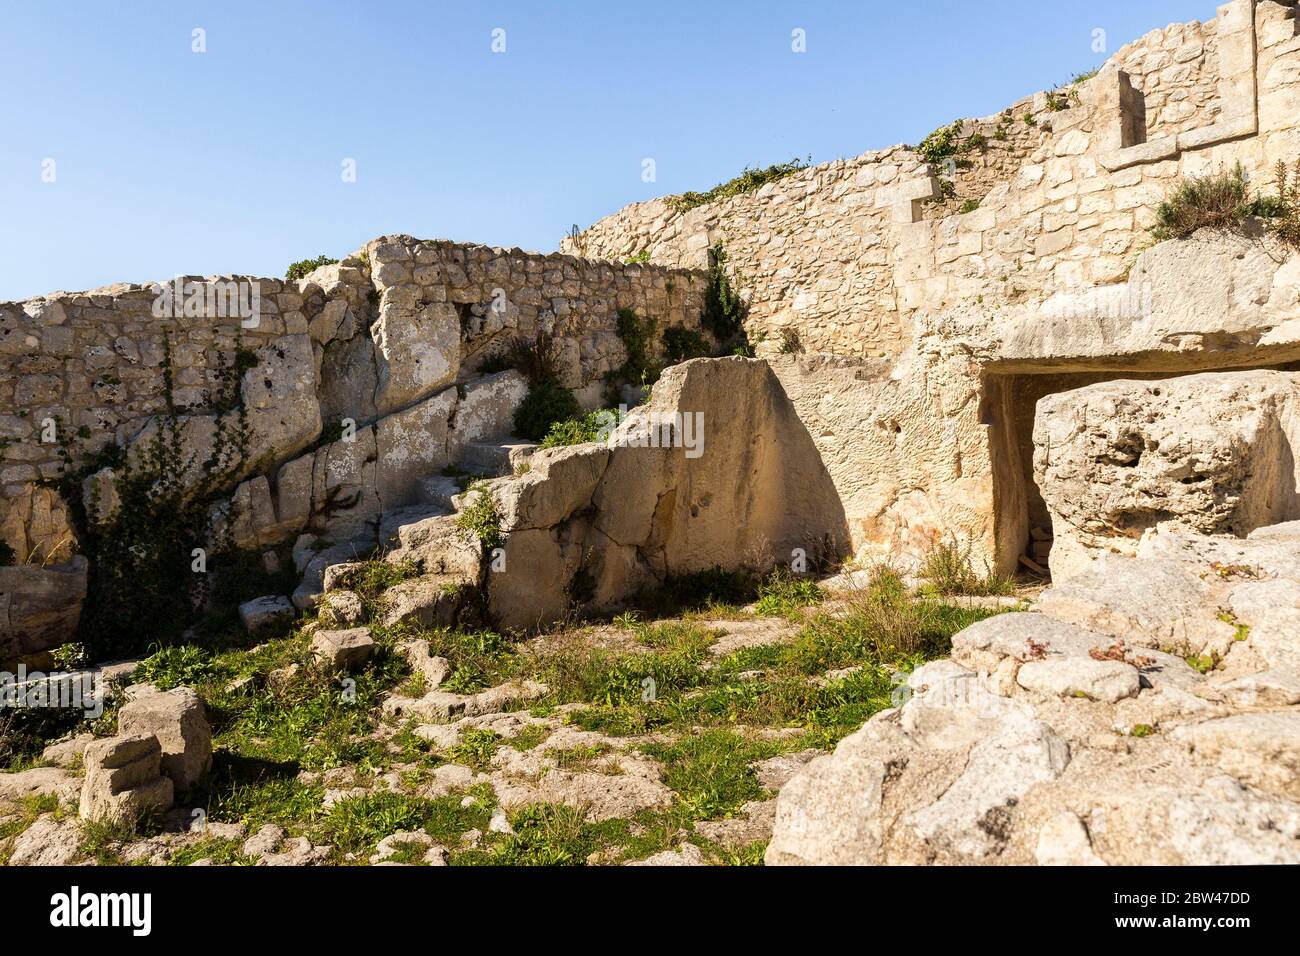 Ruines anciennes du château médiéval de Palazzolo Acrède, province de Syracuse, Italie - deuxième partie. Banque D'Images